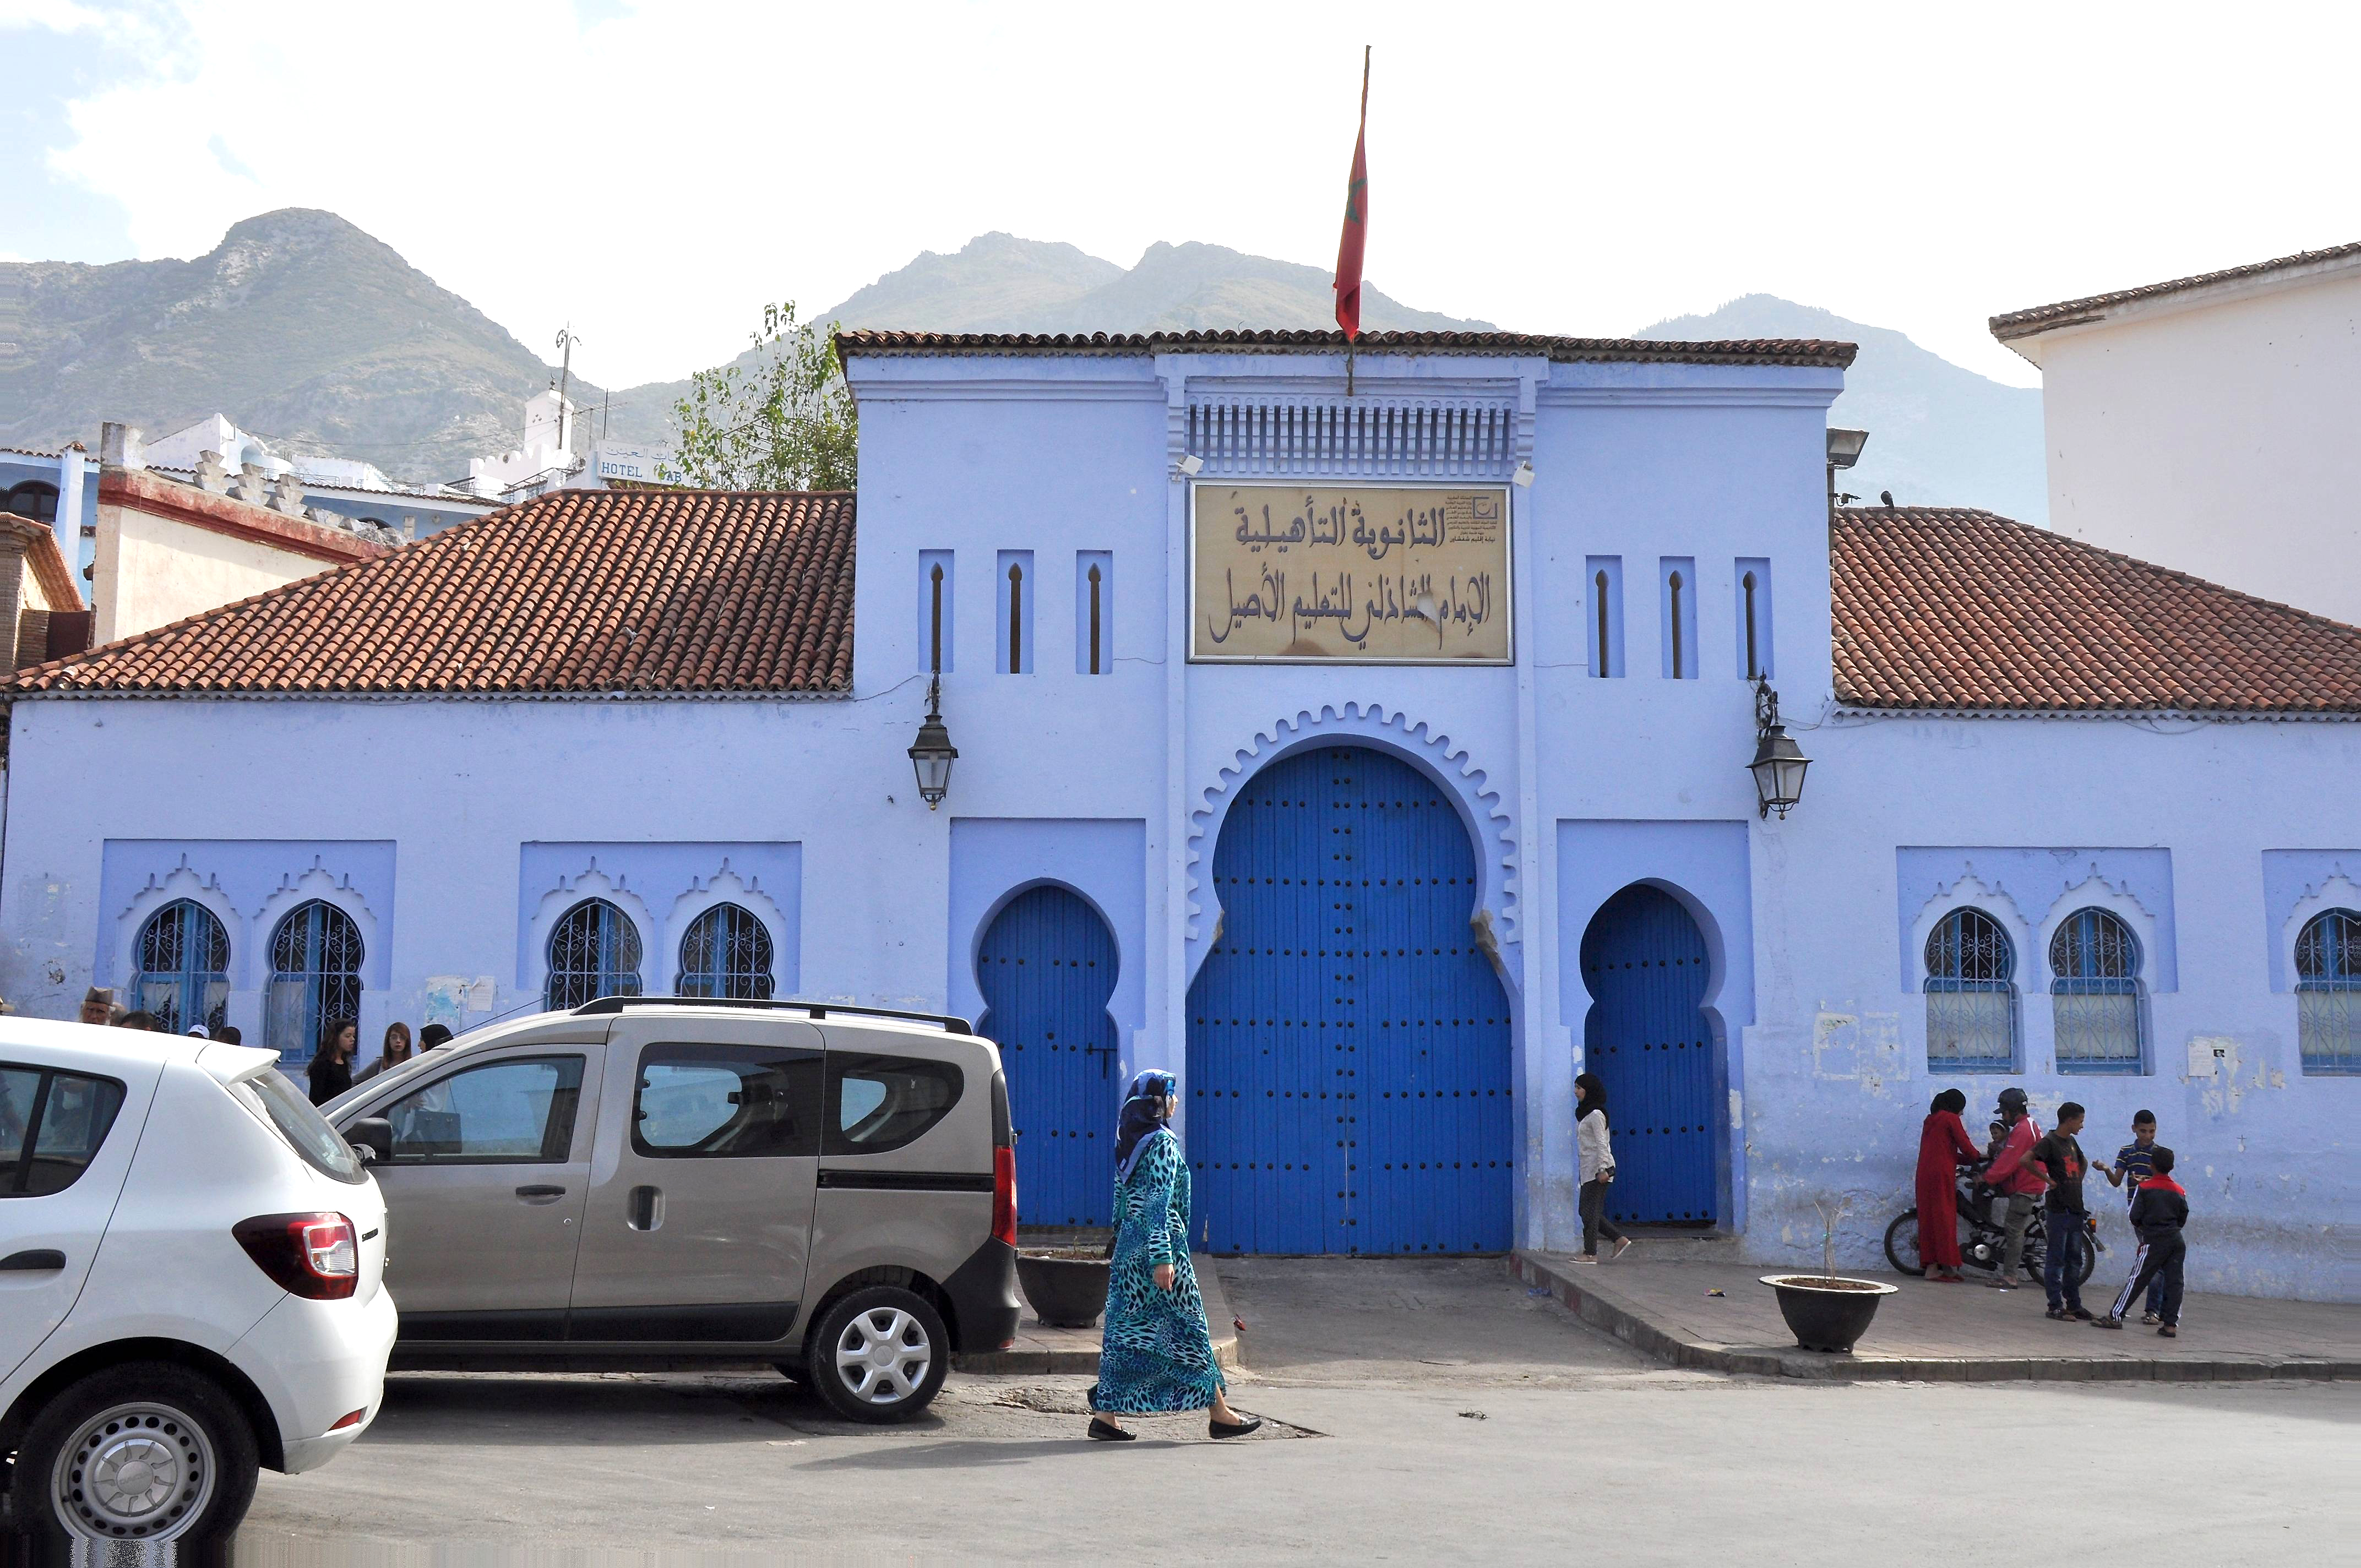 Foto: Edificio Oficial - Chaouen (Tanger-Tétouan), Marruecos